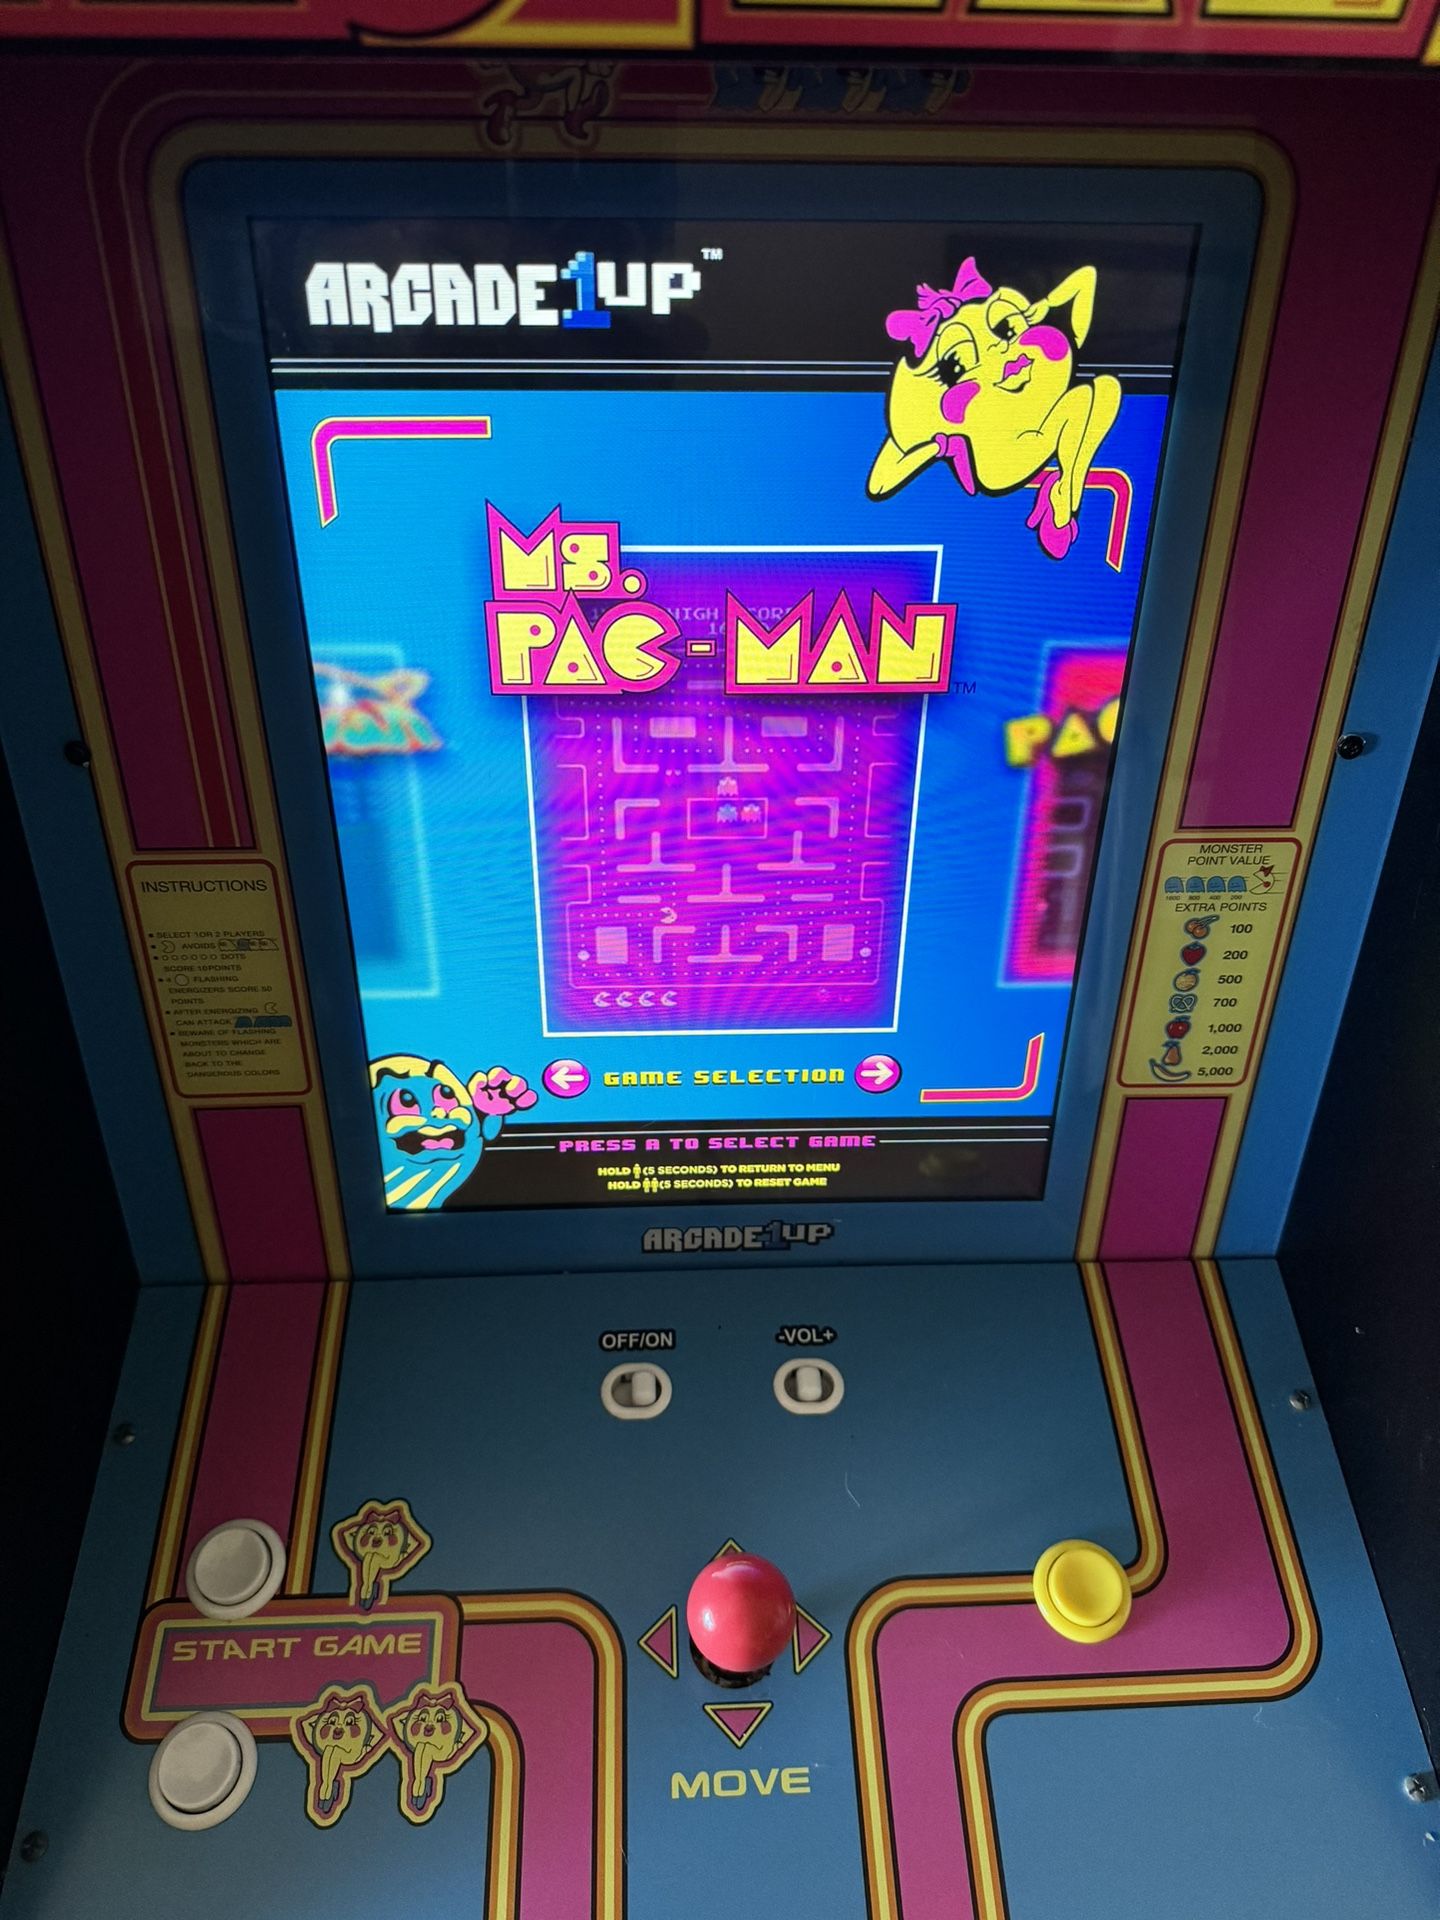 Ms Pac-Man machine